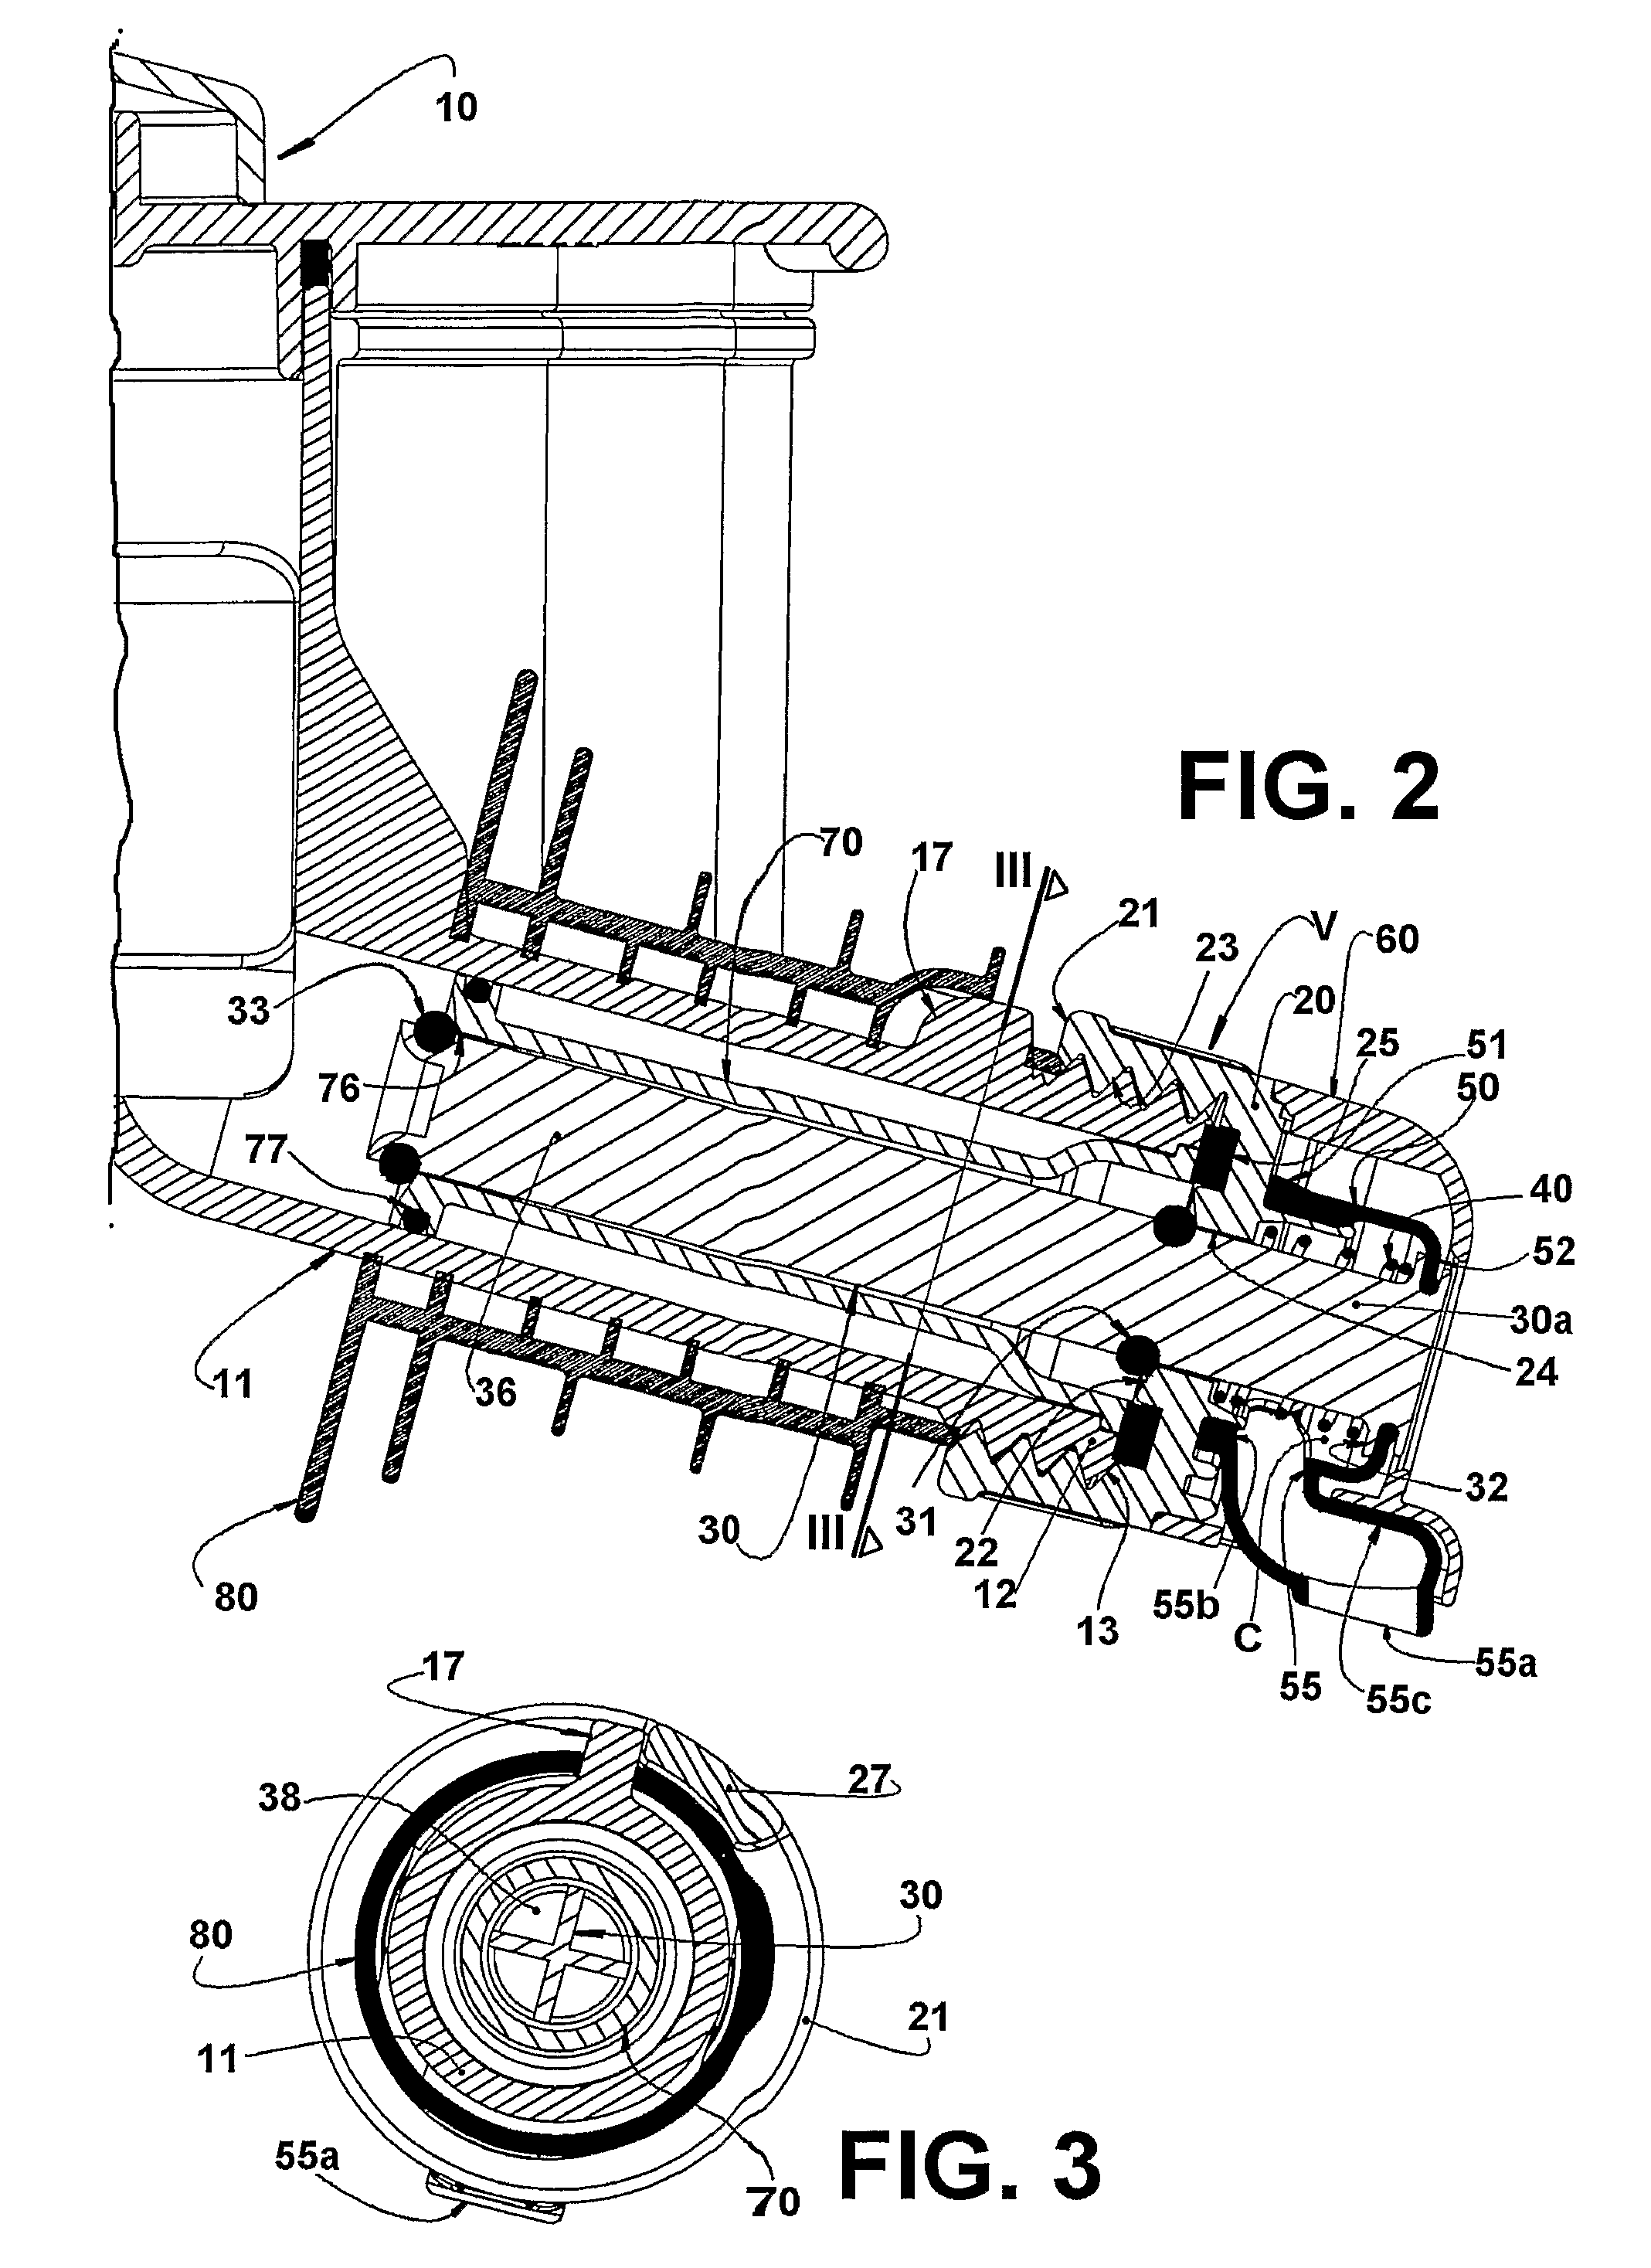 Liquid dispensing valve